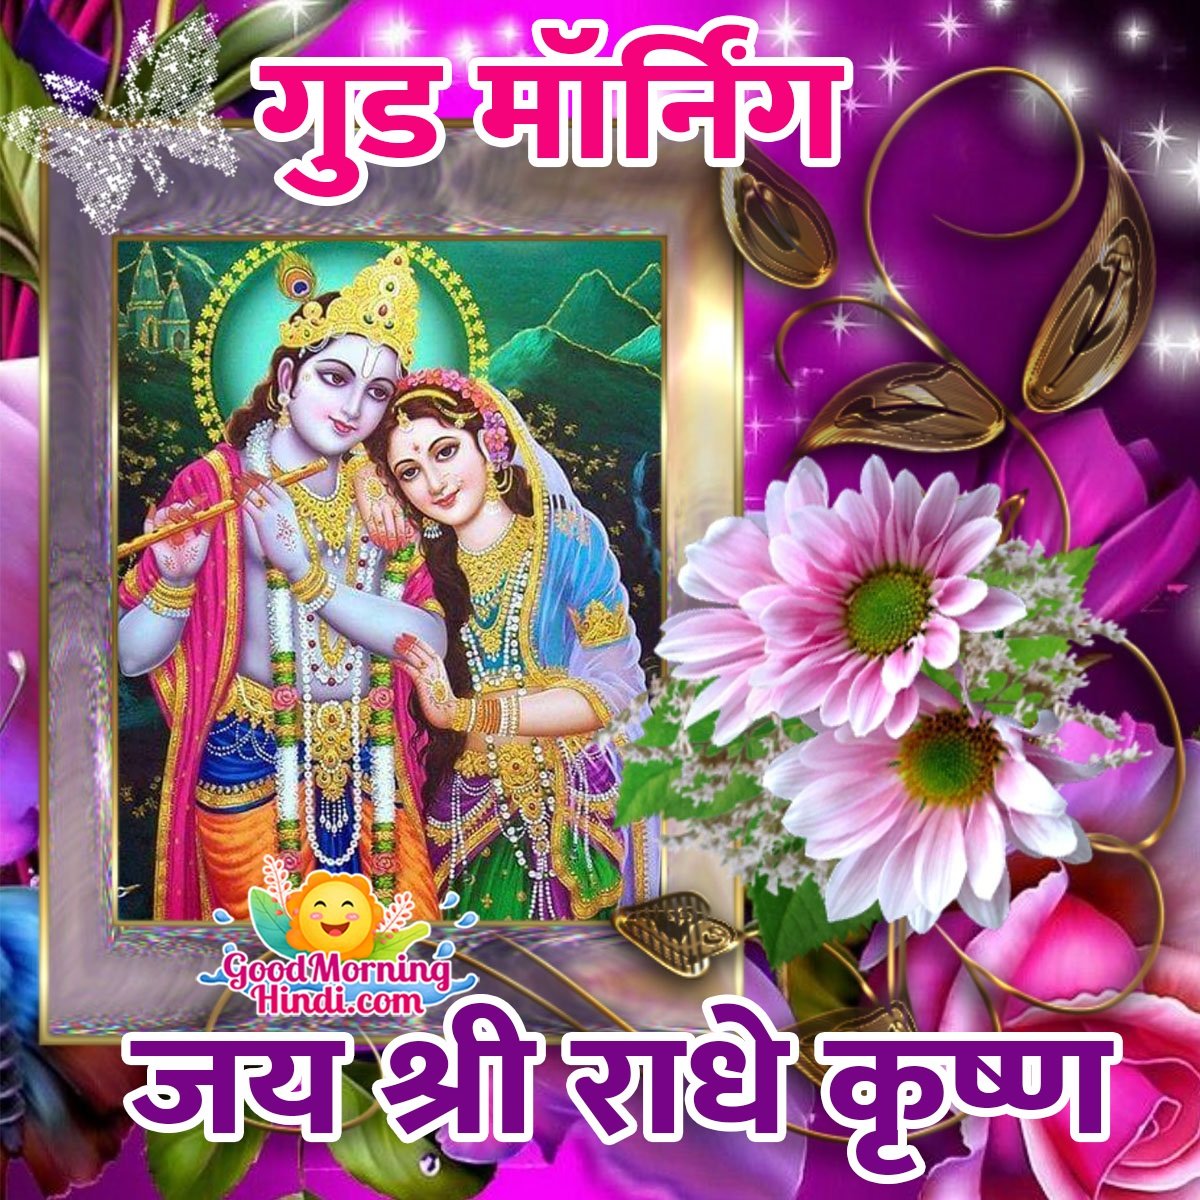 Good Morning Jai Shri Radhe Krishna Hindi Image